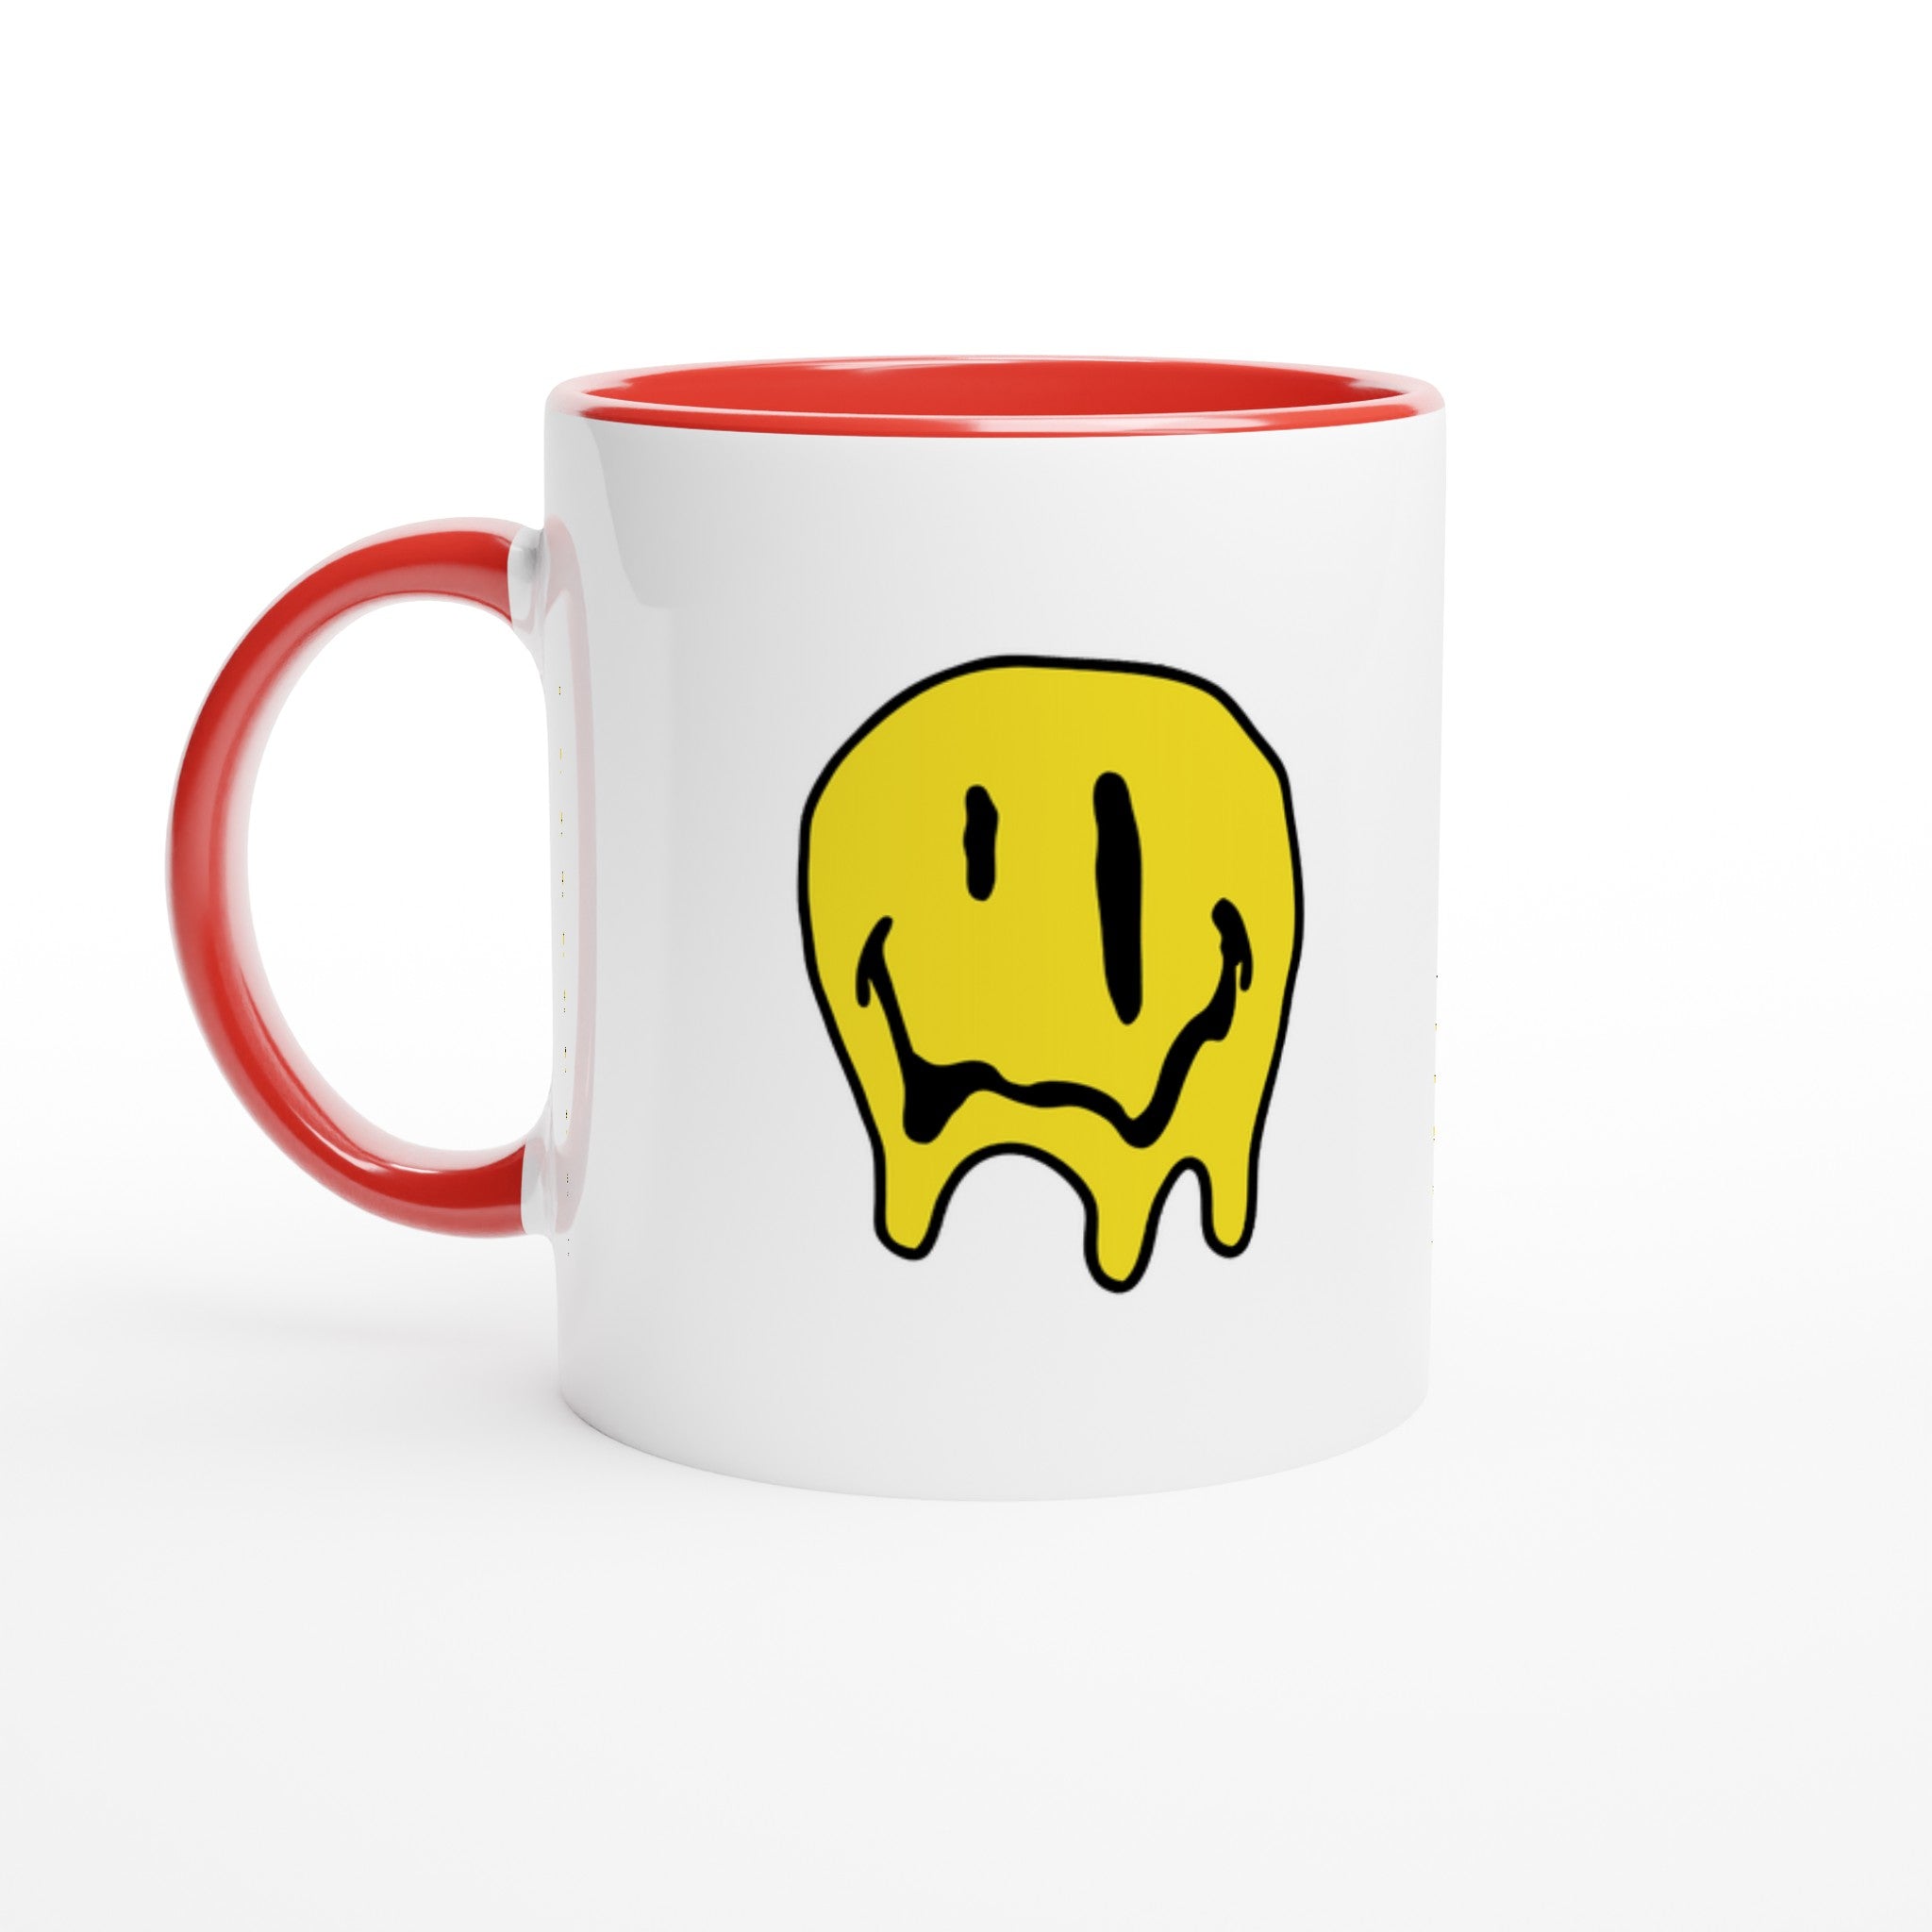 Smiley Mug - Optimalprint